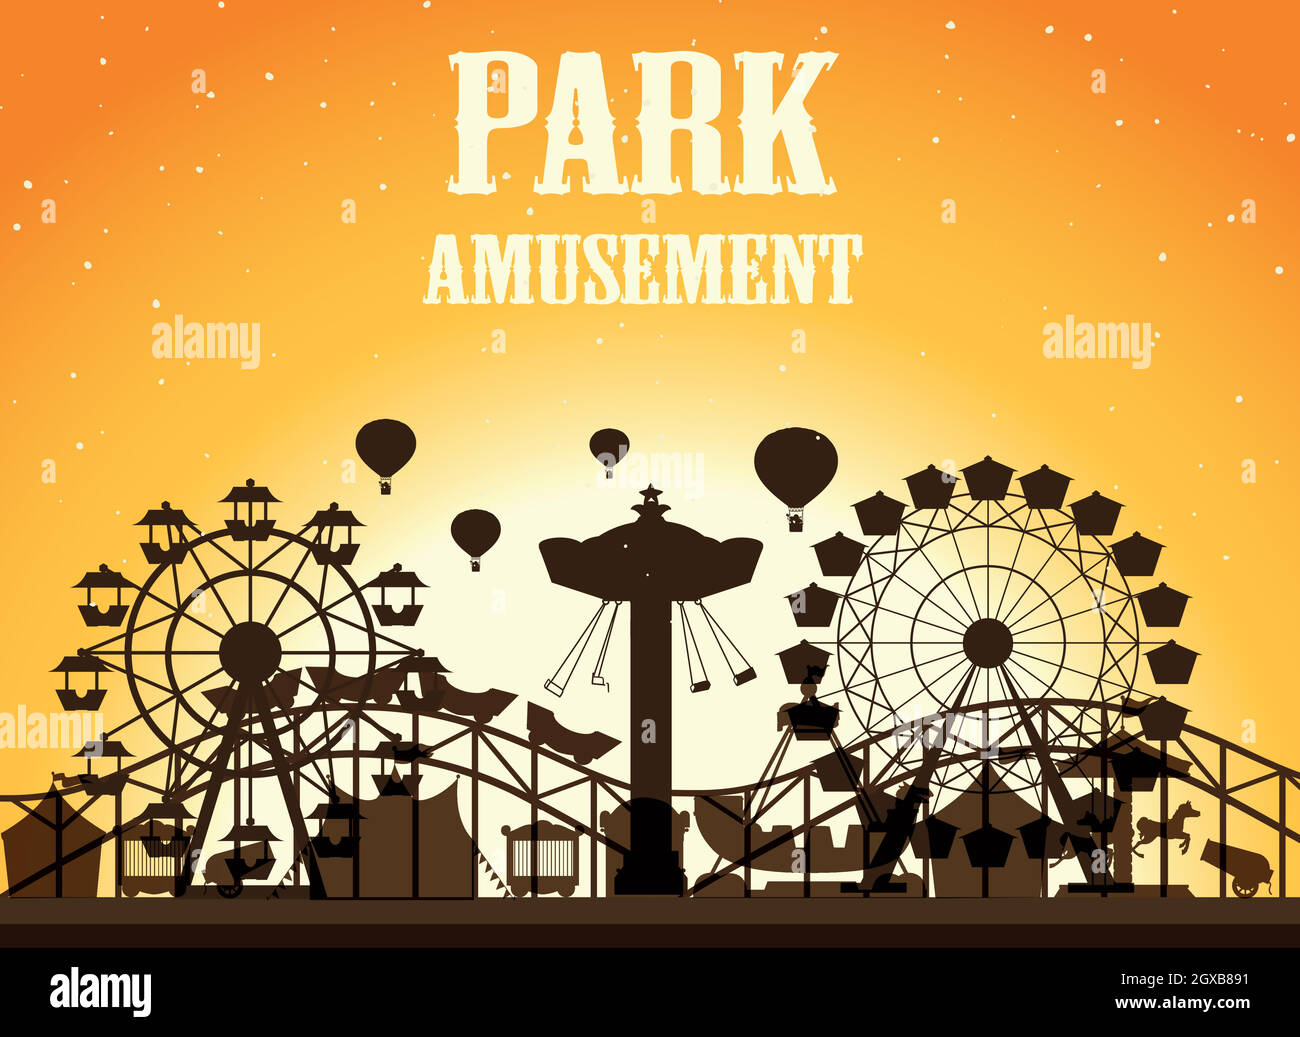 Amusement park silhoutte background Stock Vector